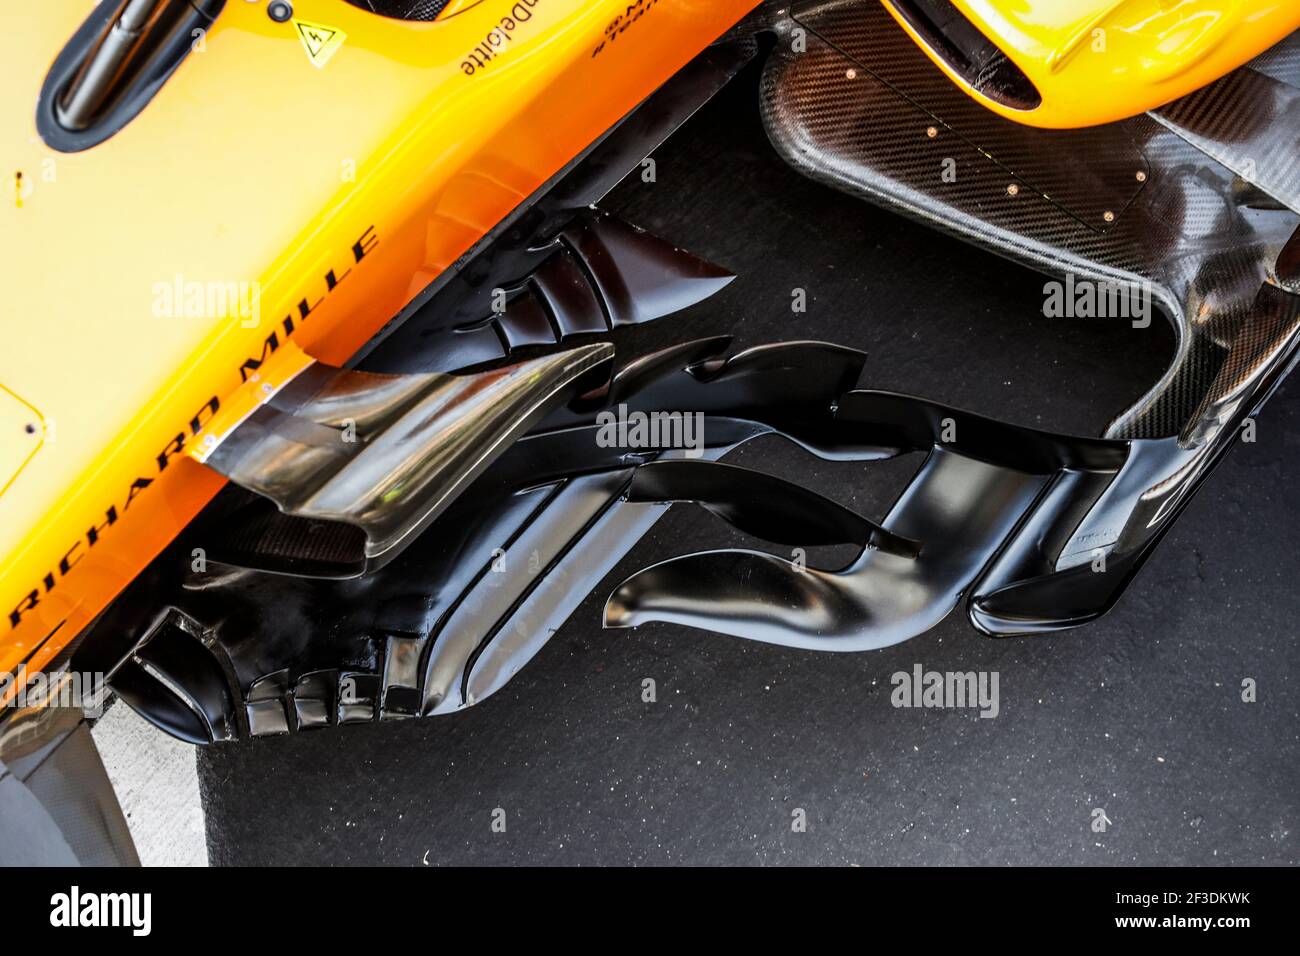 McLaren Renault MCL33, Mechanische Details der Lastkahn Boards während der Formel 1 FIA Weltmeisterschaft 2018, Italien Grand Prix, in Monza von august 30 bis september 2 - Foto Florent Gooden / DPPI Stockfoto